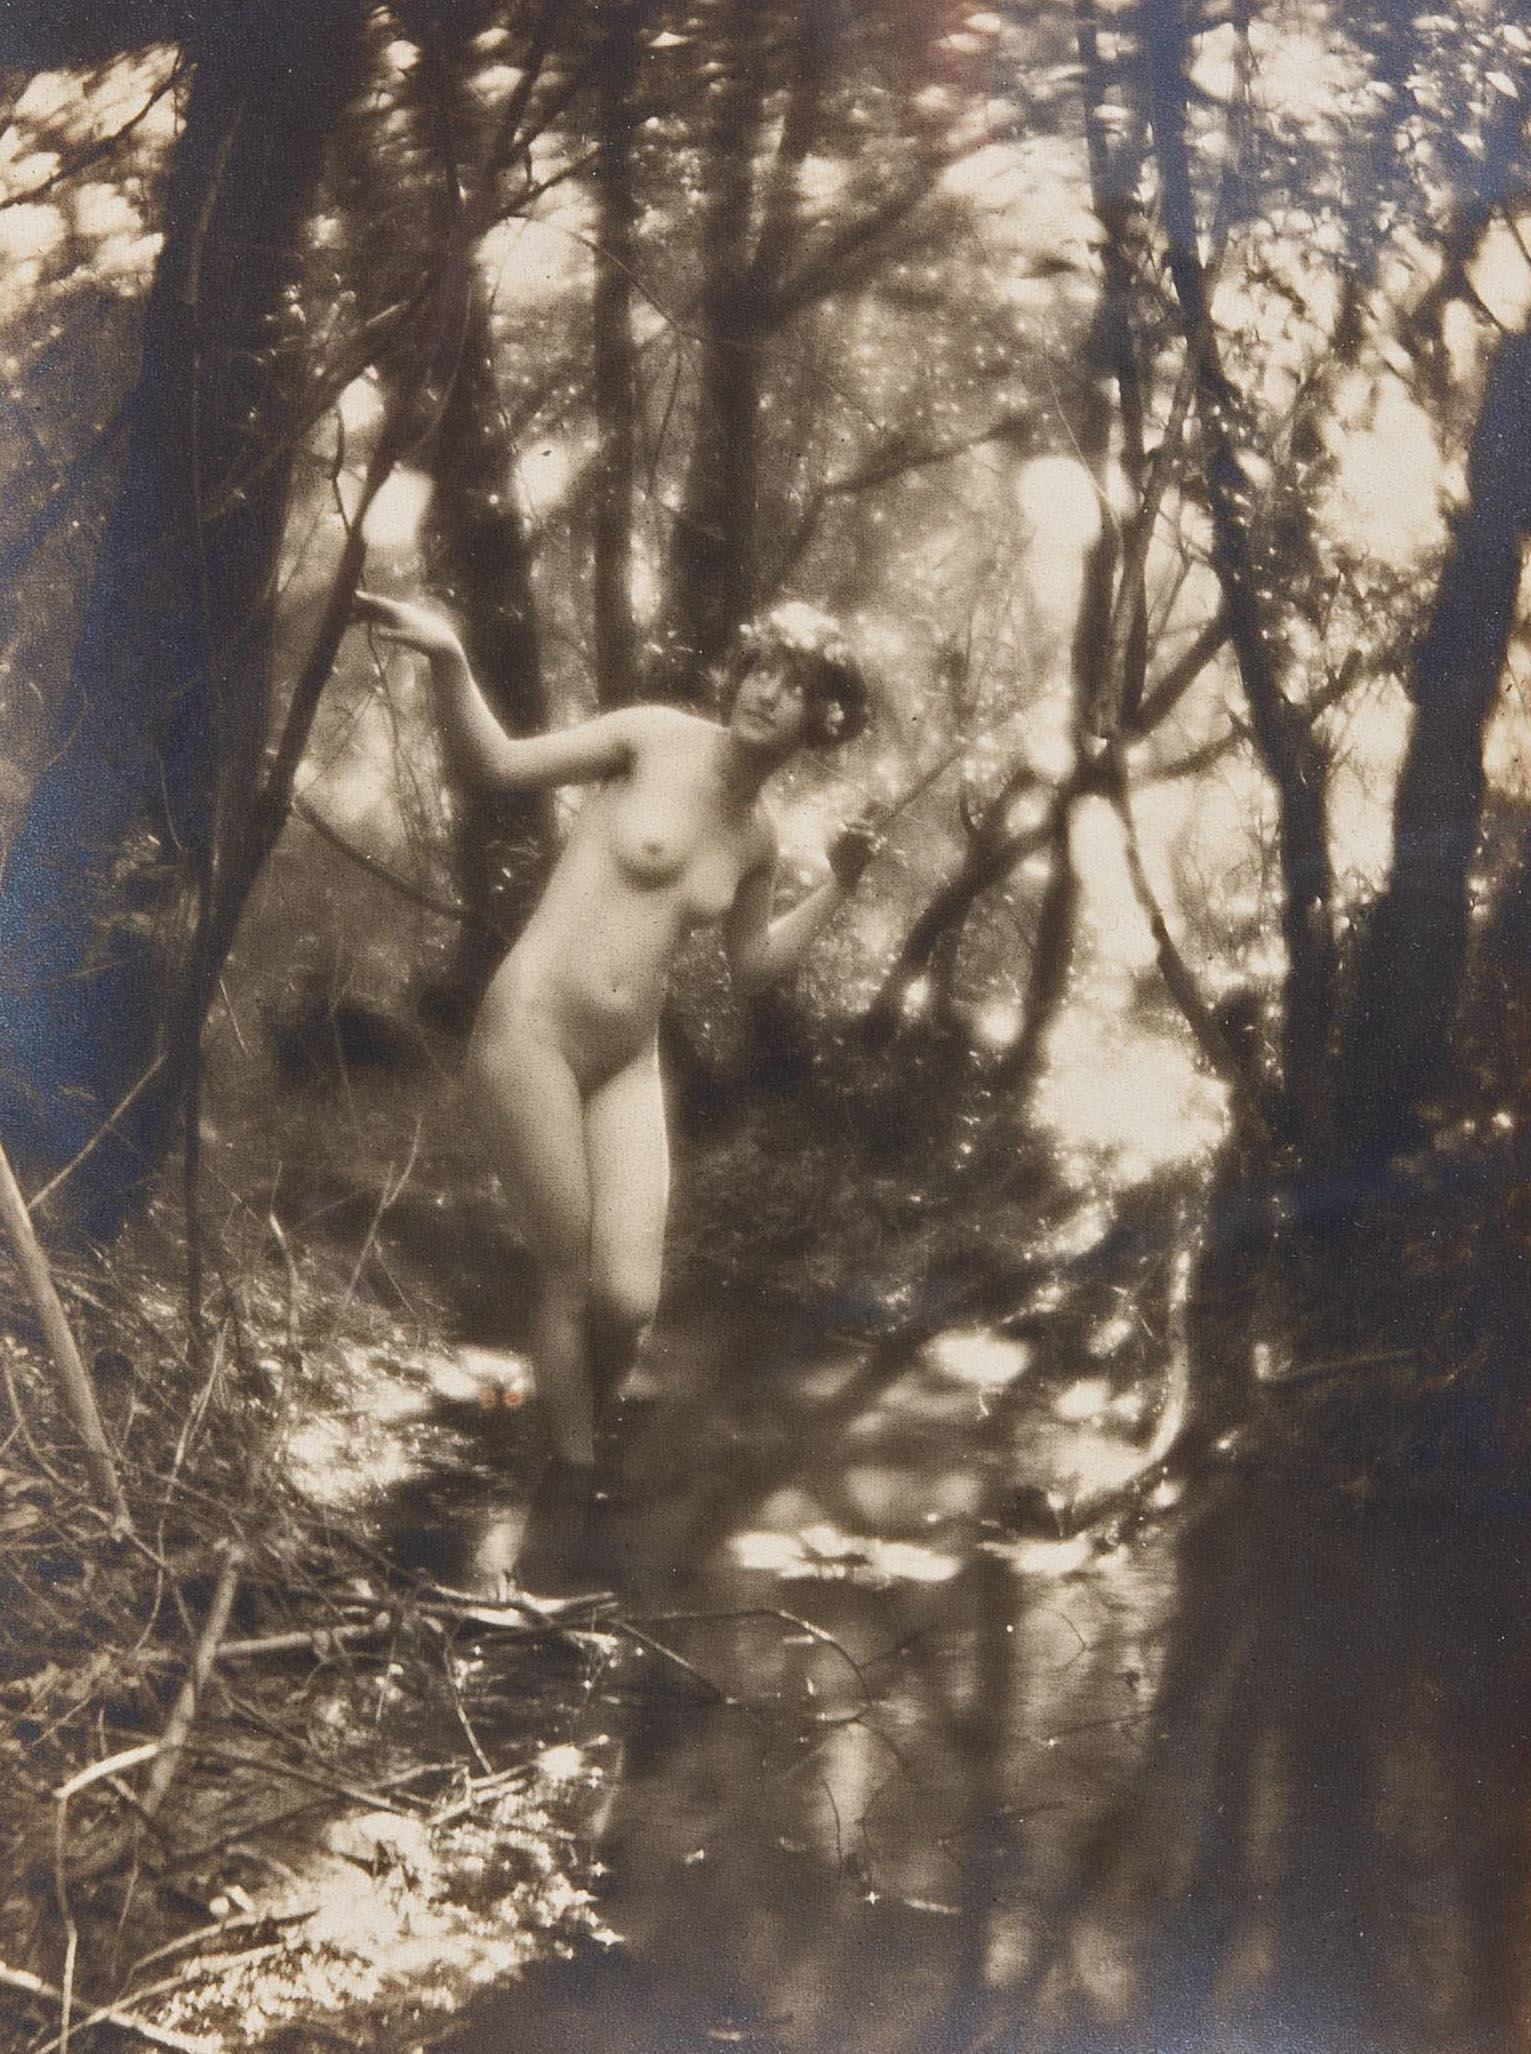 Nudefarbene Nymphe von Charles Cook aus Holz von Charles Cook, um 1910, Viktorianische Fotografie